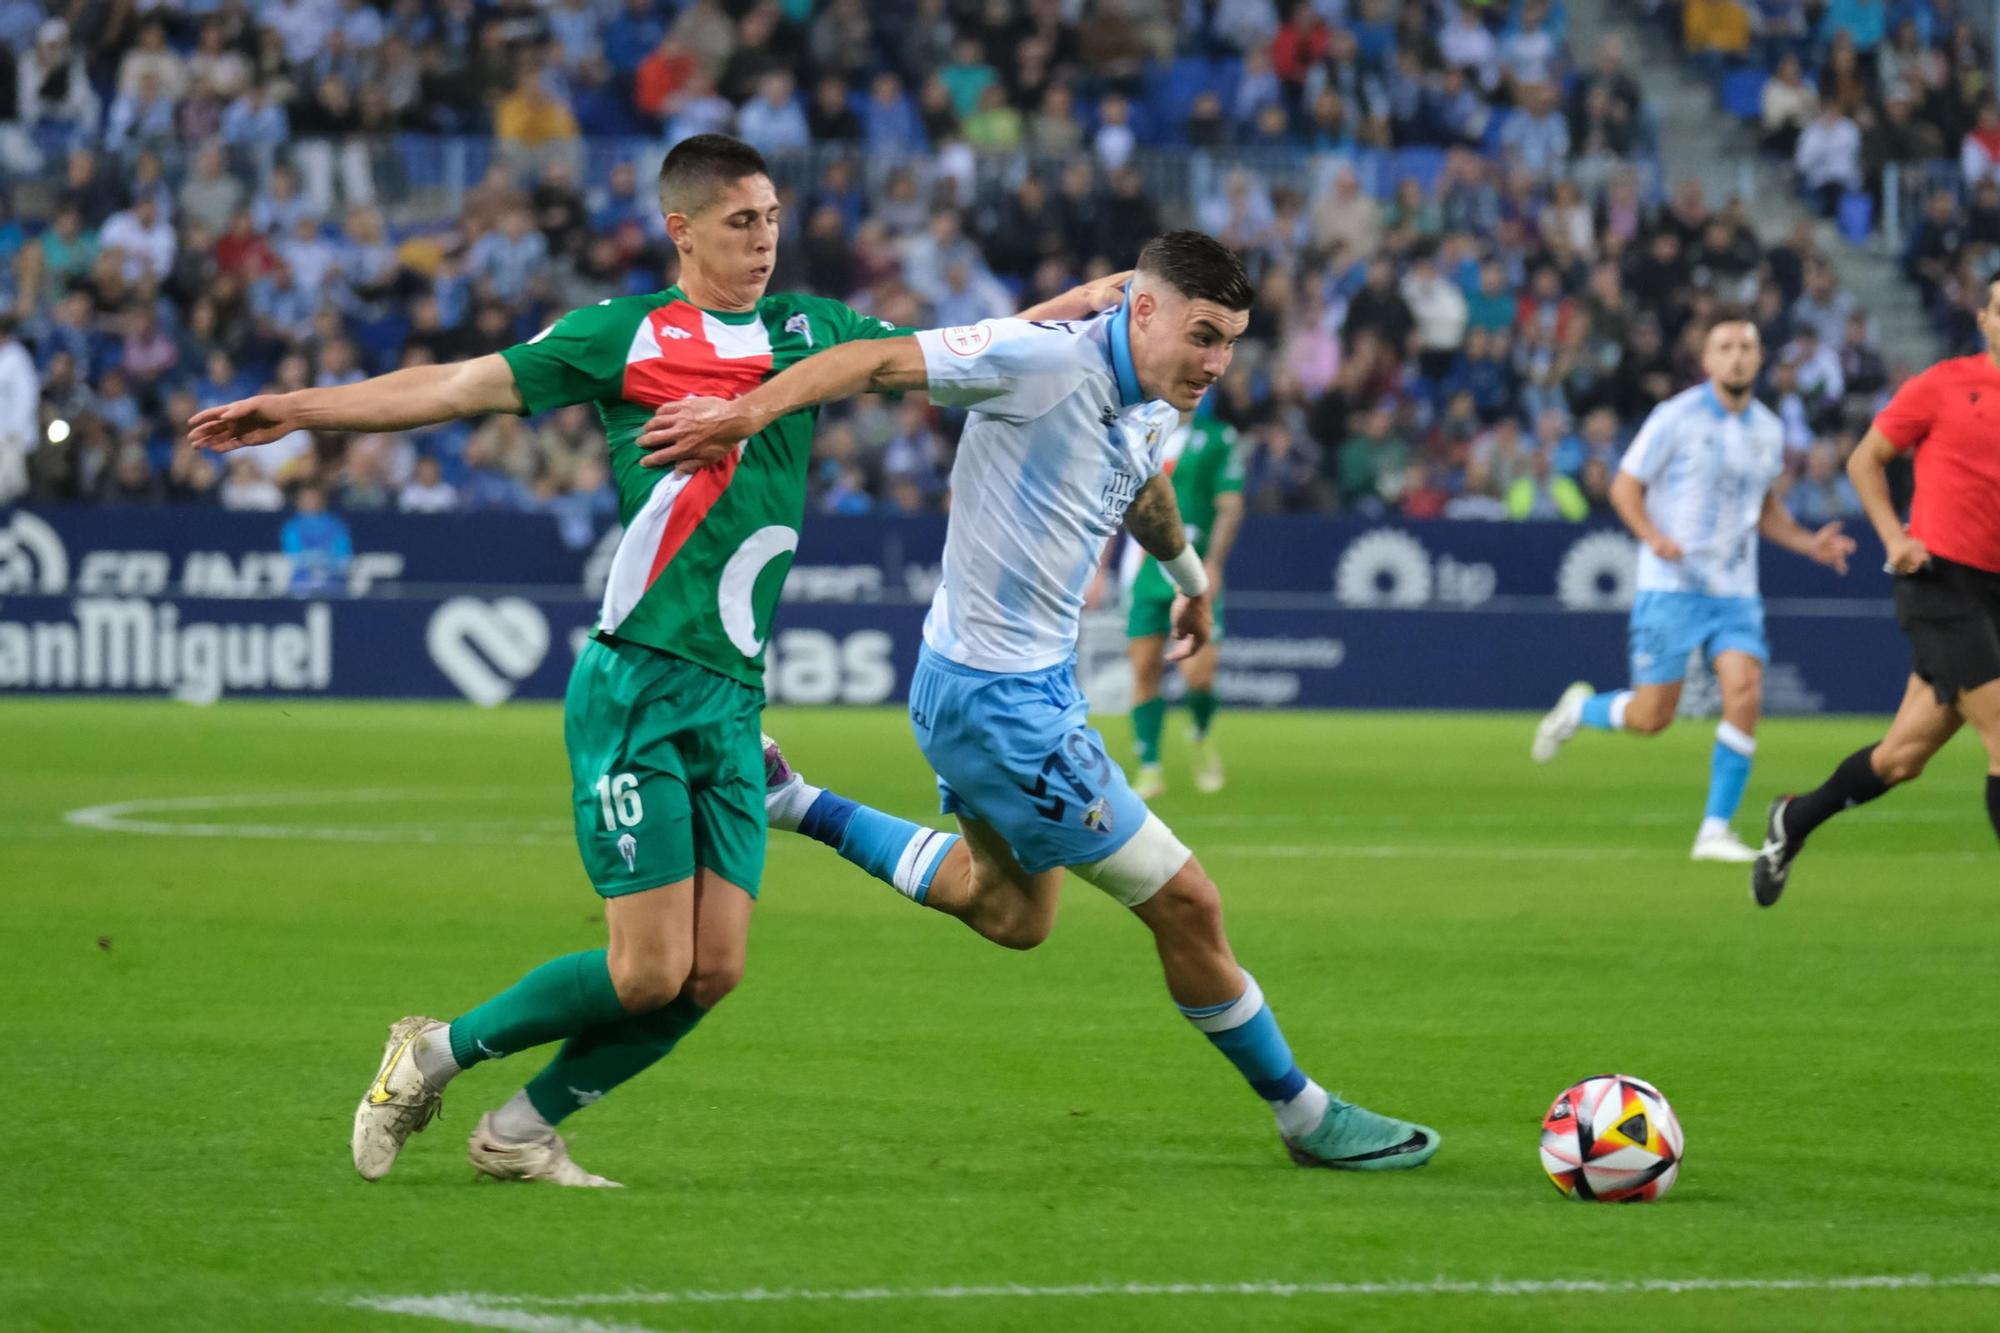 El 1x1 y las puntuaciones de los jugadores del Málaga CF ante el Sporting  en Gijón